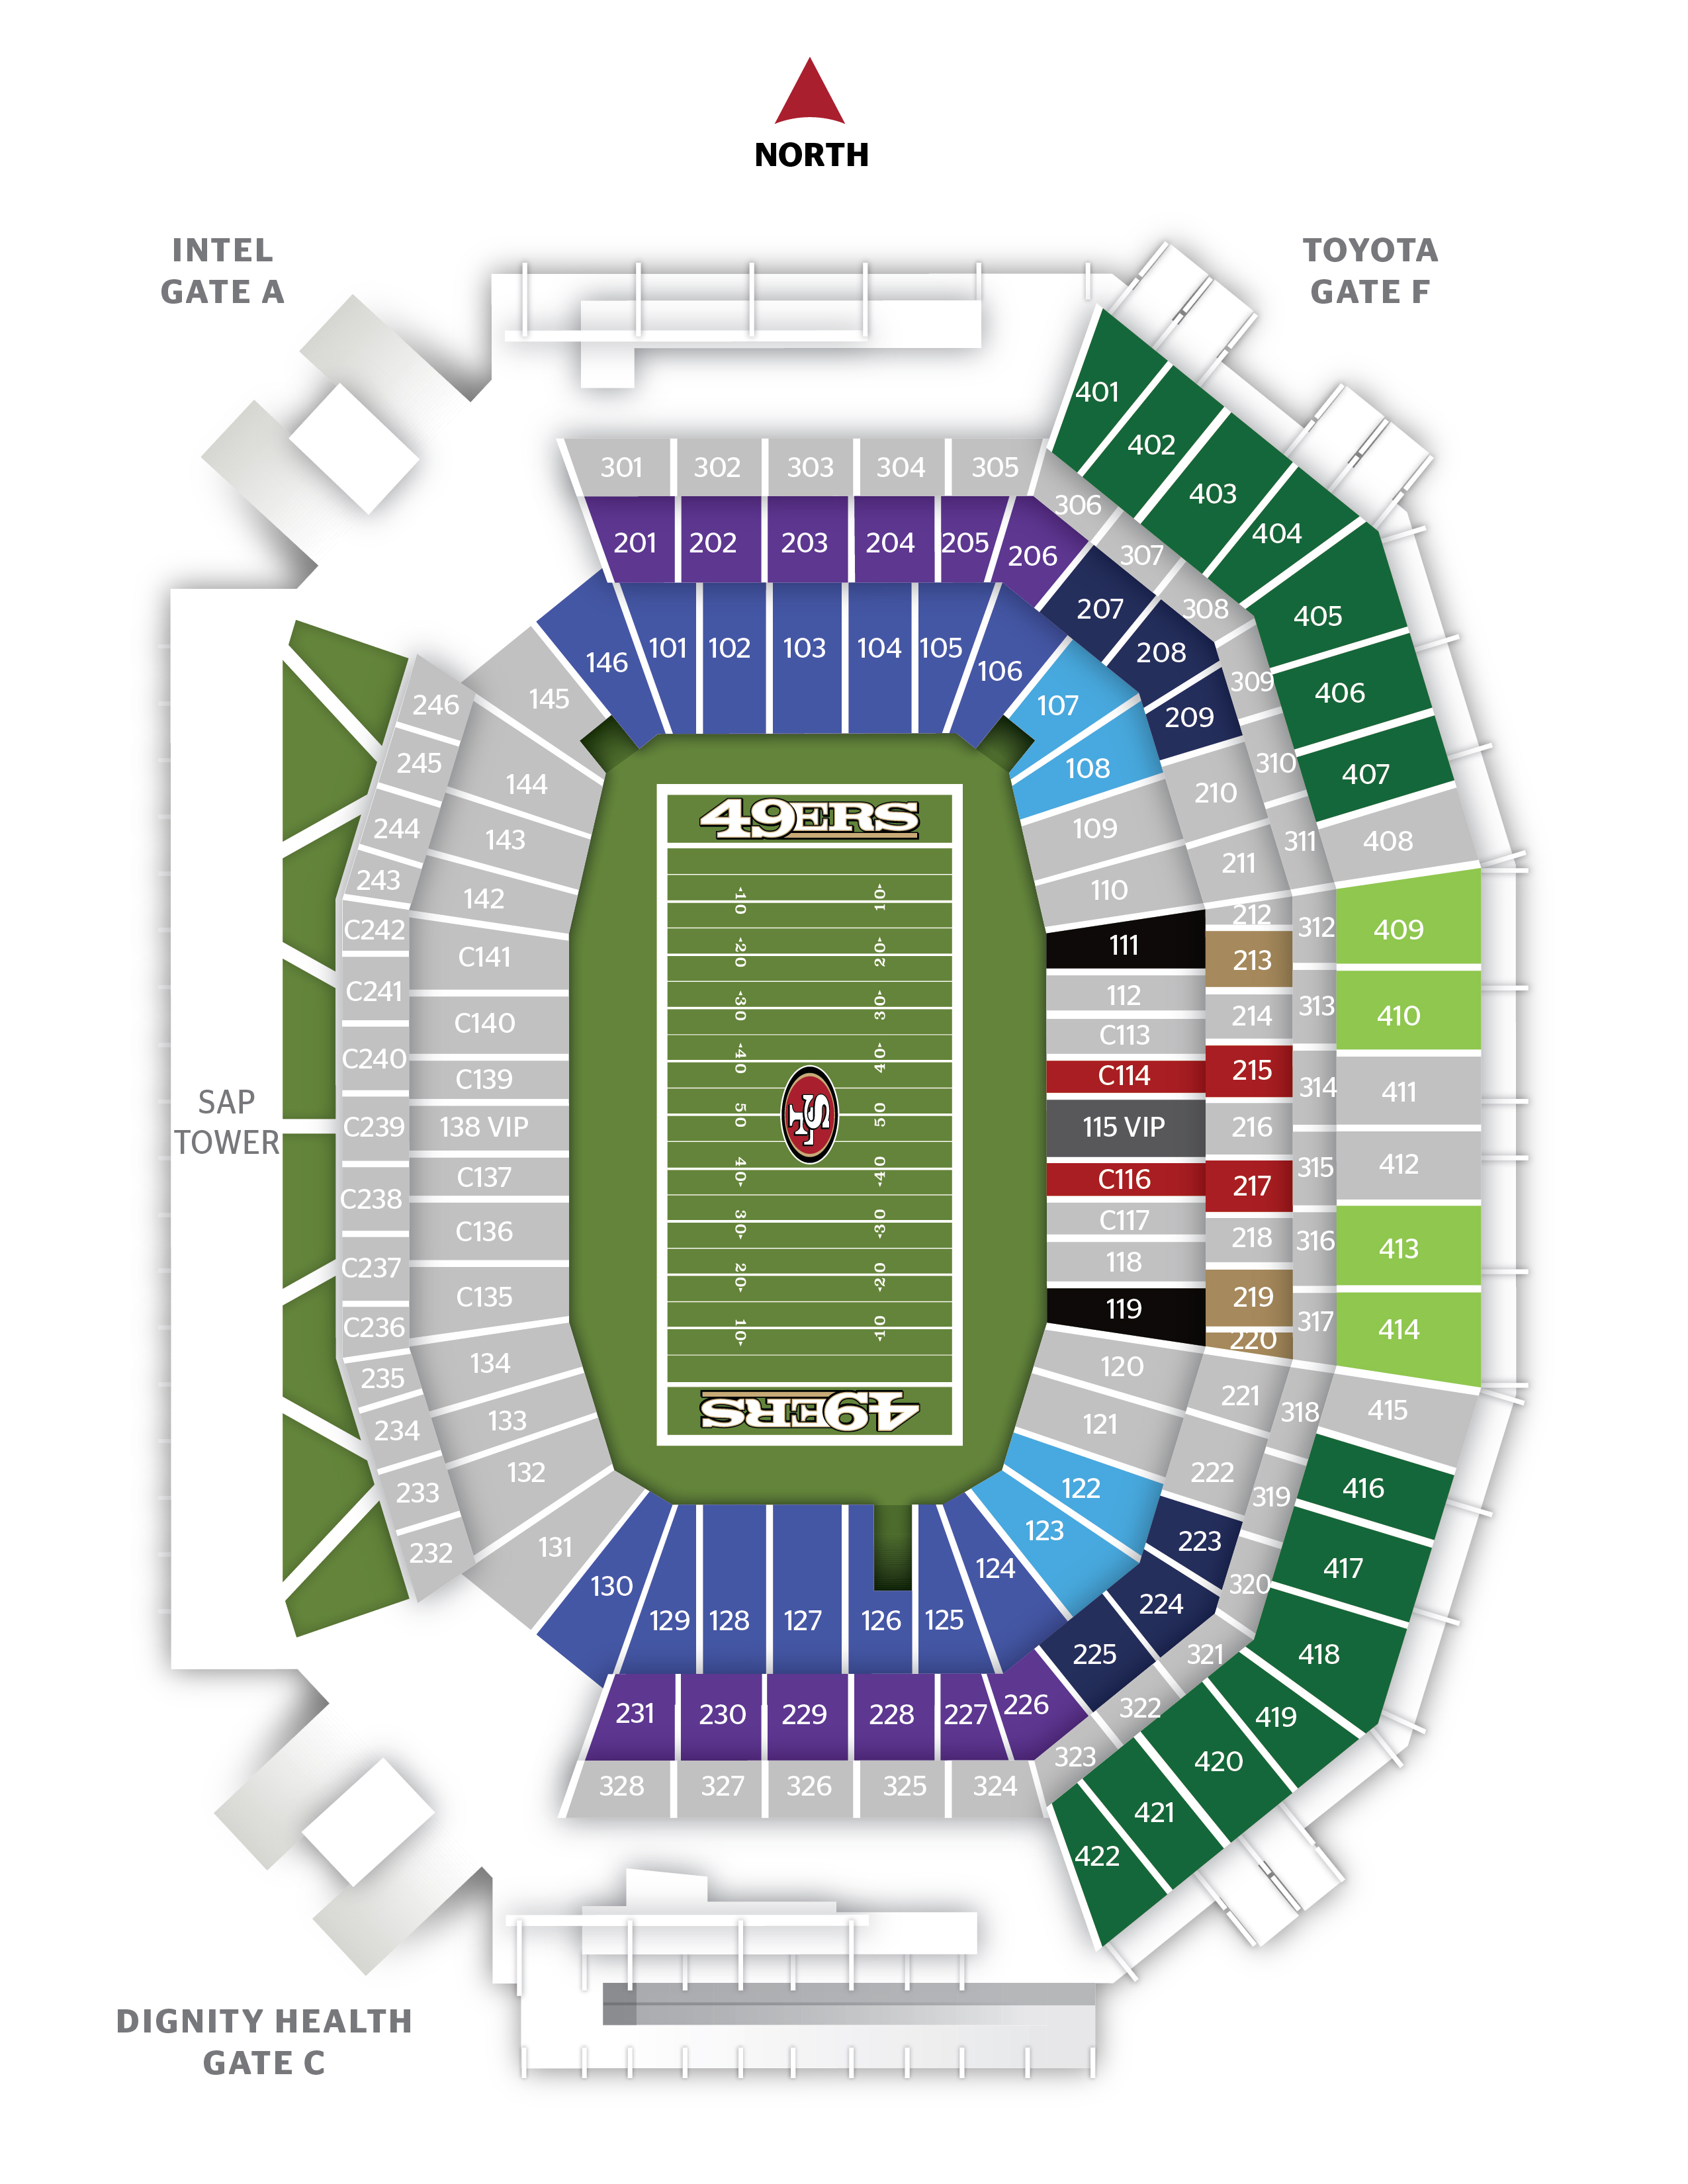 Tickets & Suites - Levi's® Stadium